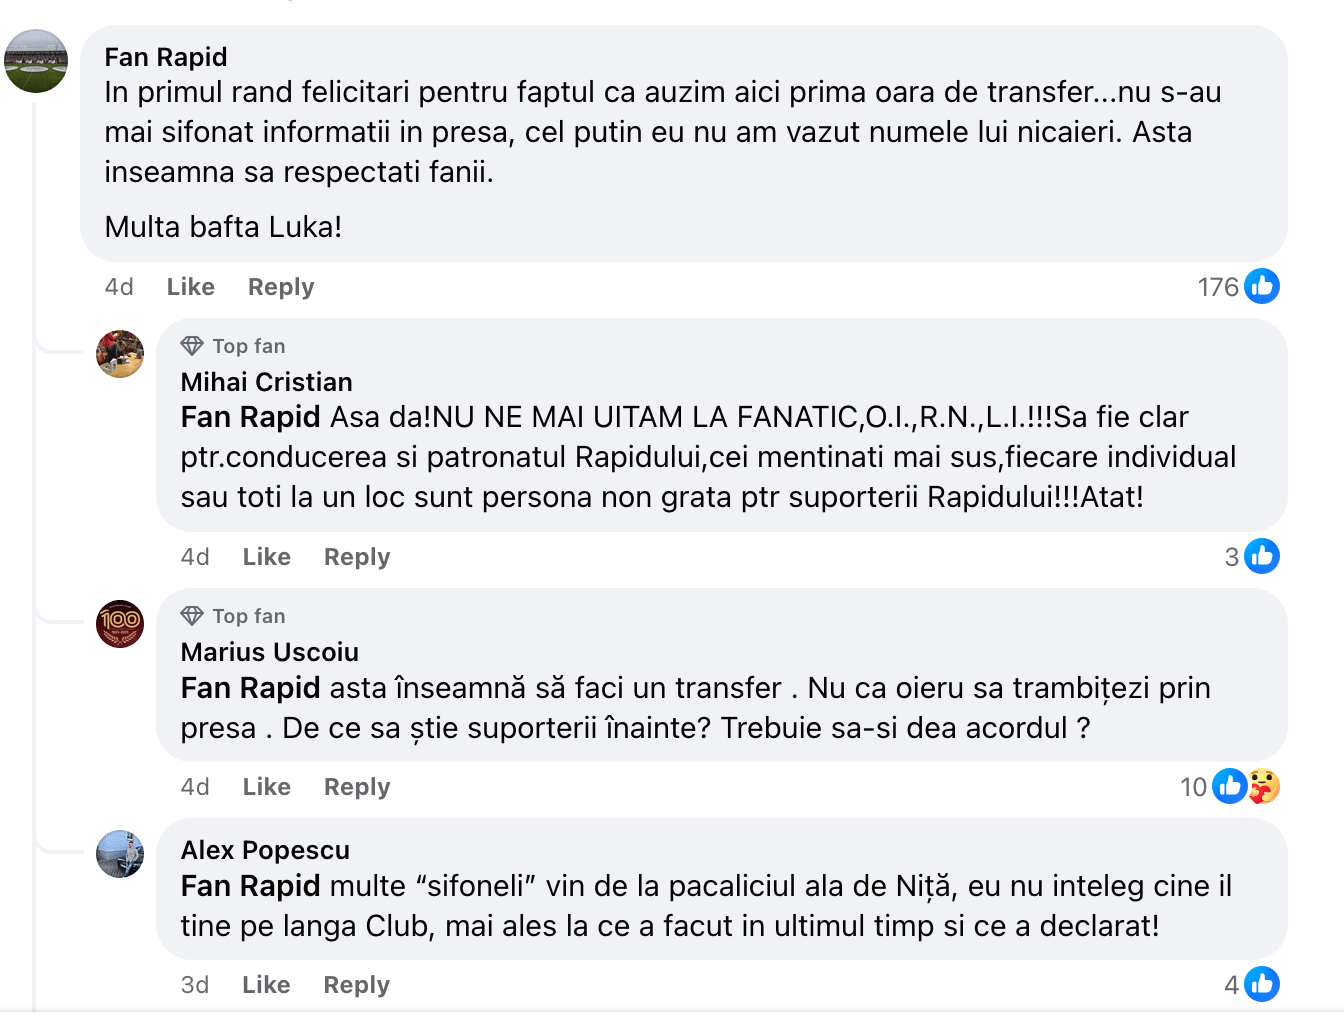 Reacții ale fanilor Rapidului legate de transferuri care sunt anunțate în premieră de club, nu de presa sportivă